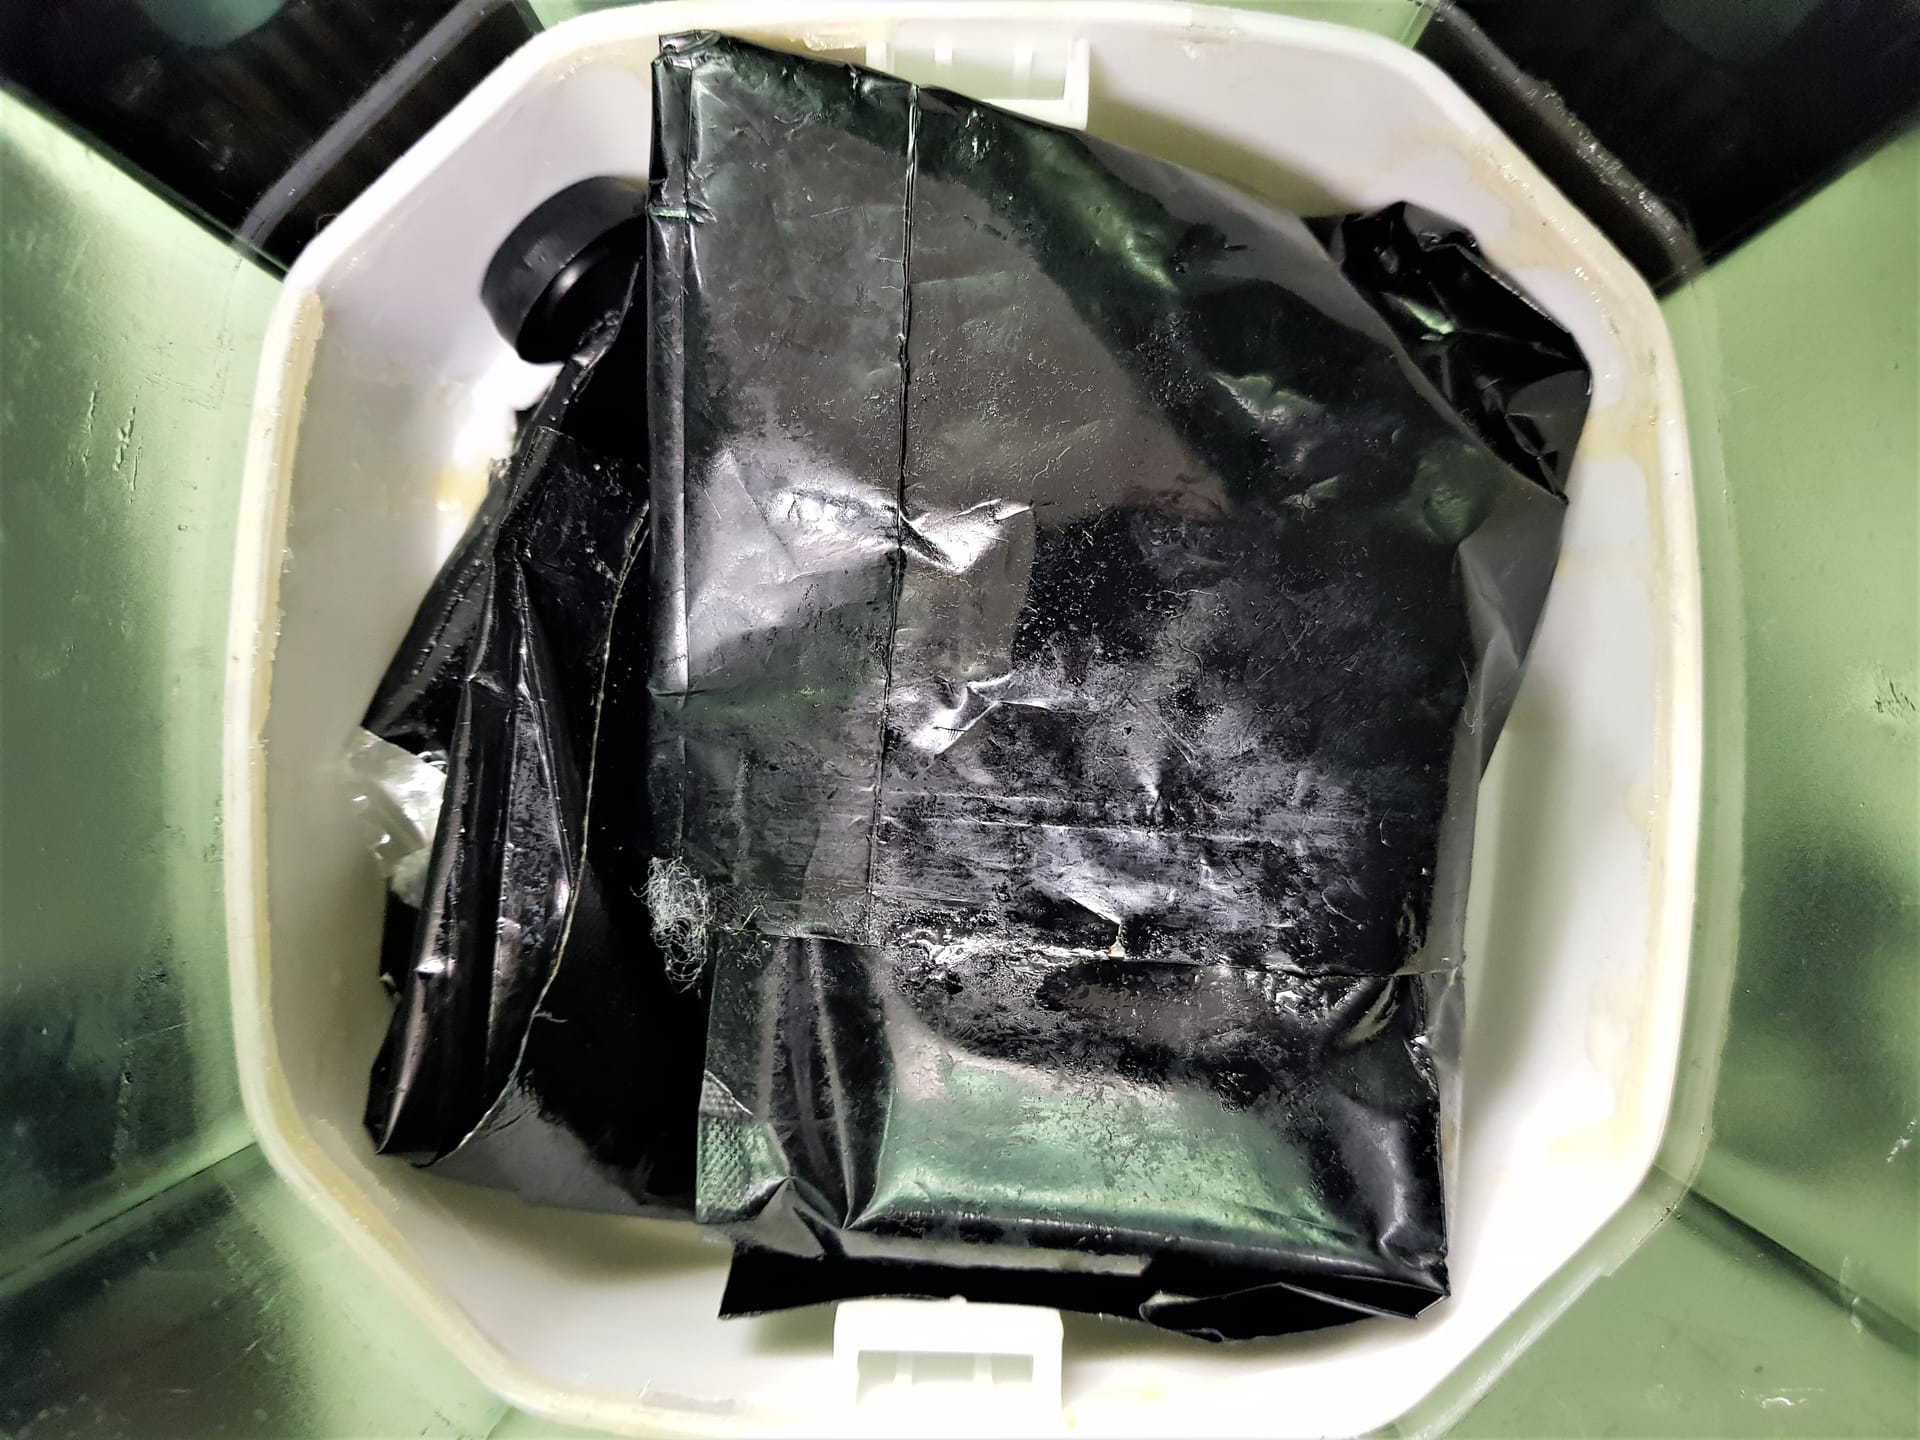 Geöffneter Aquariumfilter: In der schwarzen Folie ist Kokain eingewickelt.